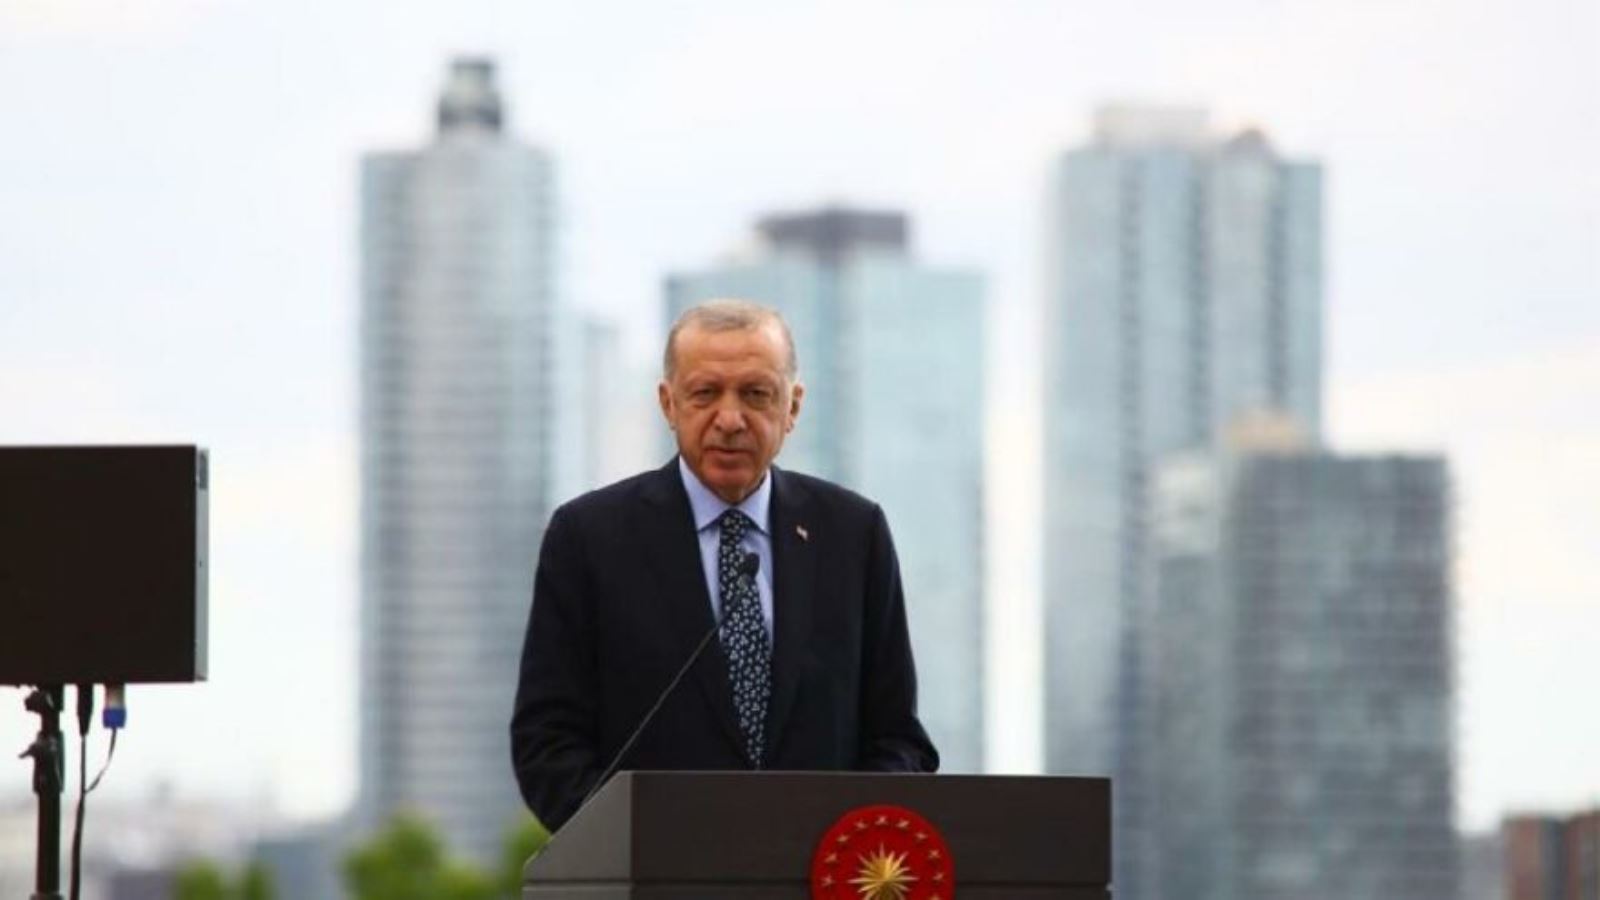 AKP'li Cumhurbaşkanı Erdoğan, ABD'de Biden ile neden görüşemedi? Prof. Dr. Barış Doster açıkladı